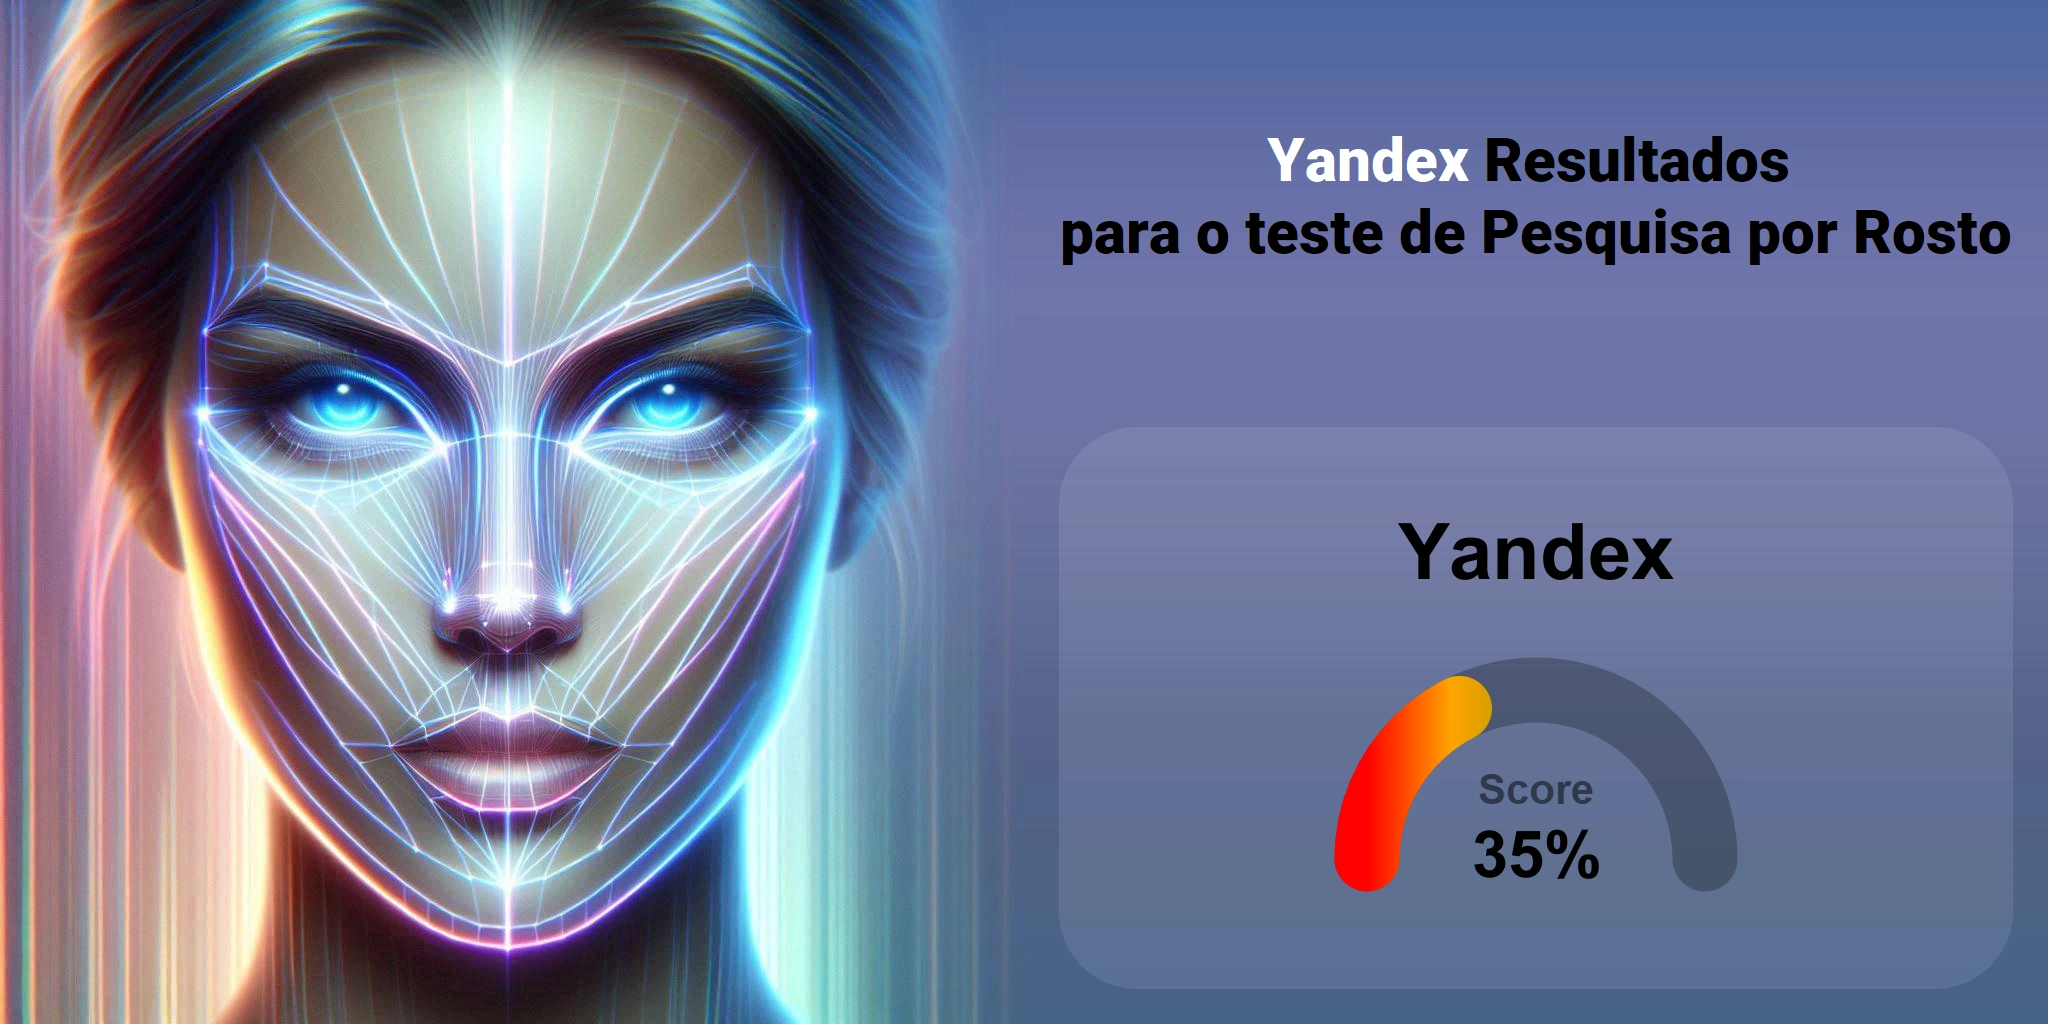 Yandex é o melhor para busca de rostos?